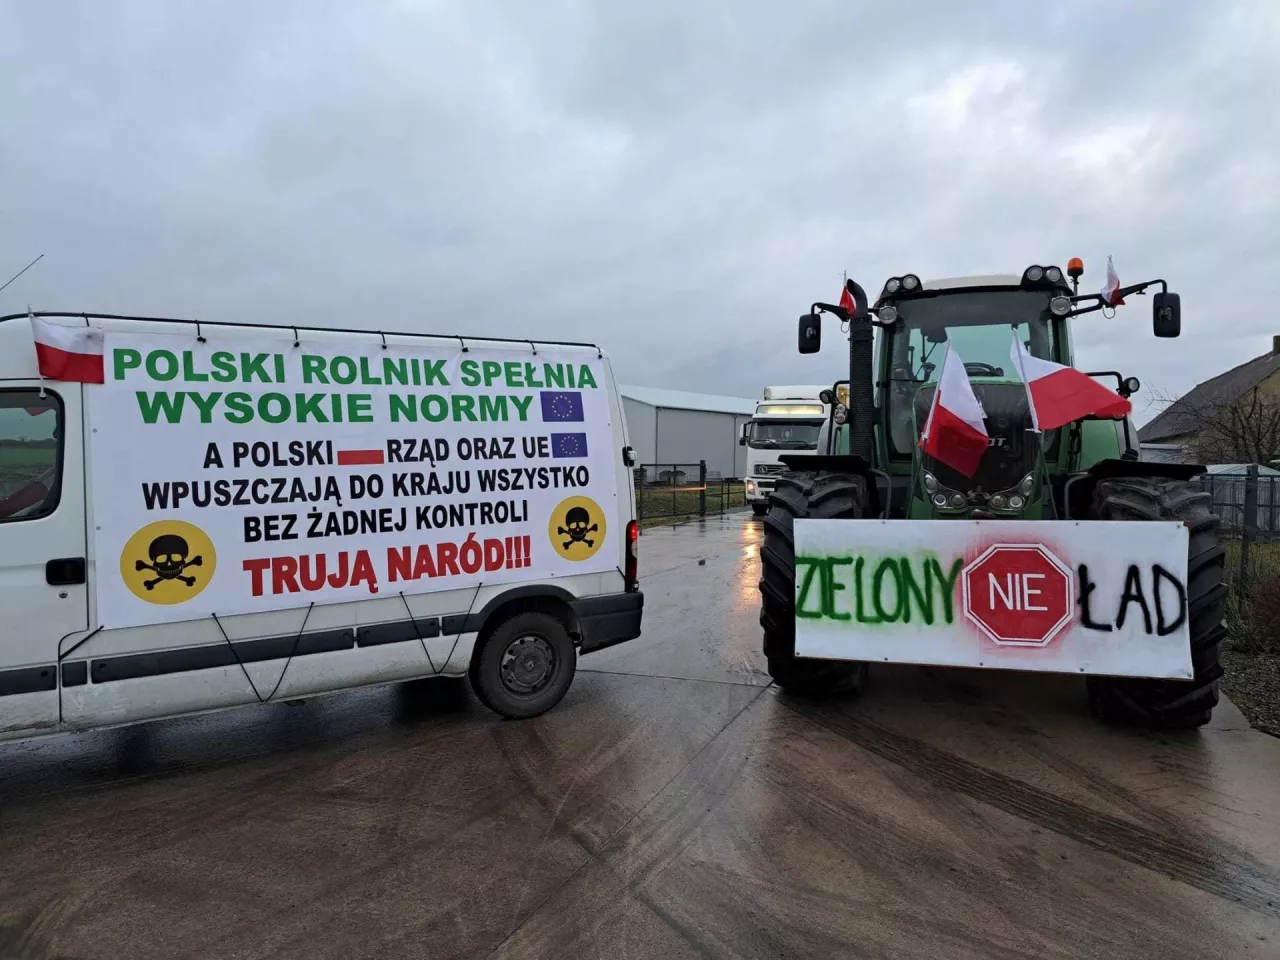 &lt;p&gt;Zielony Ład i import produktów rolnych z Ukrainy to dwa główne problemy polskich rolników.&lt;/p&gt;